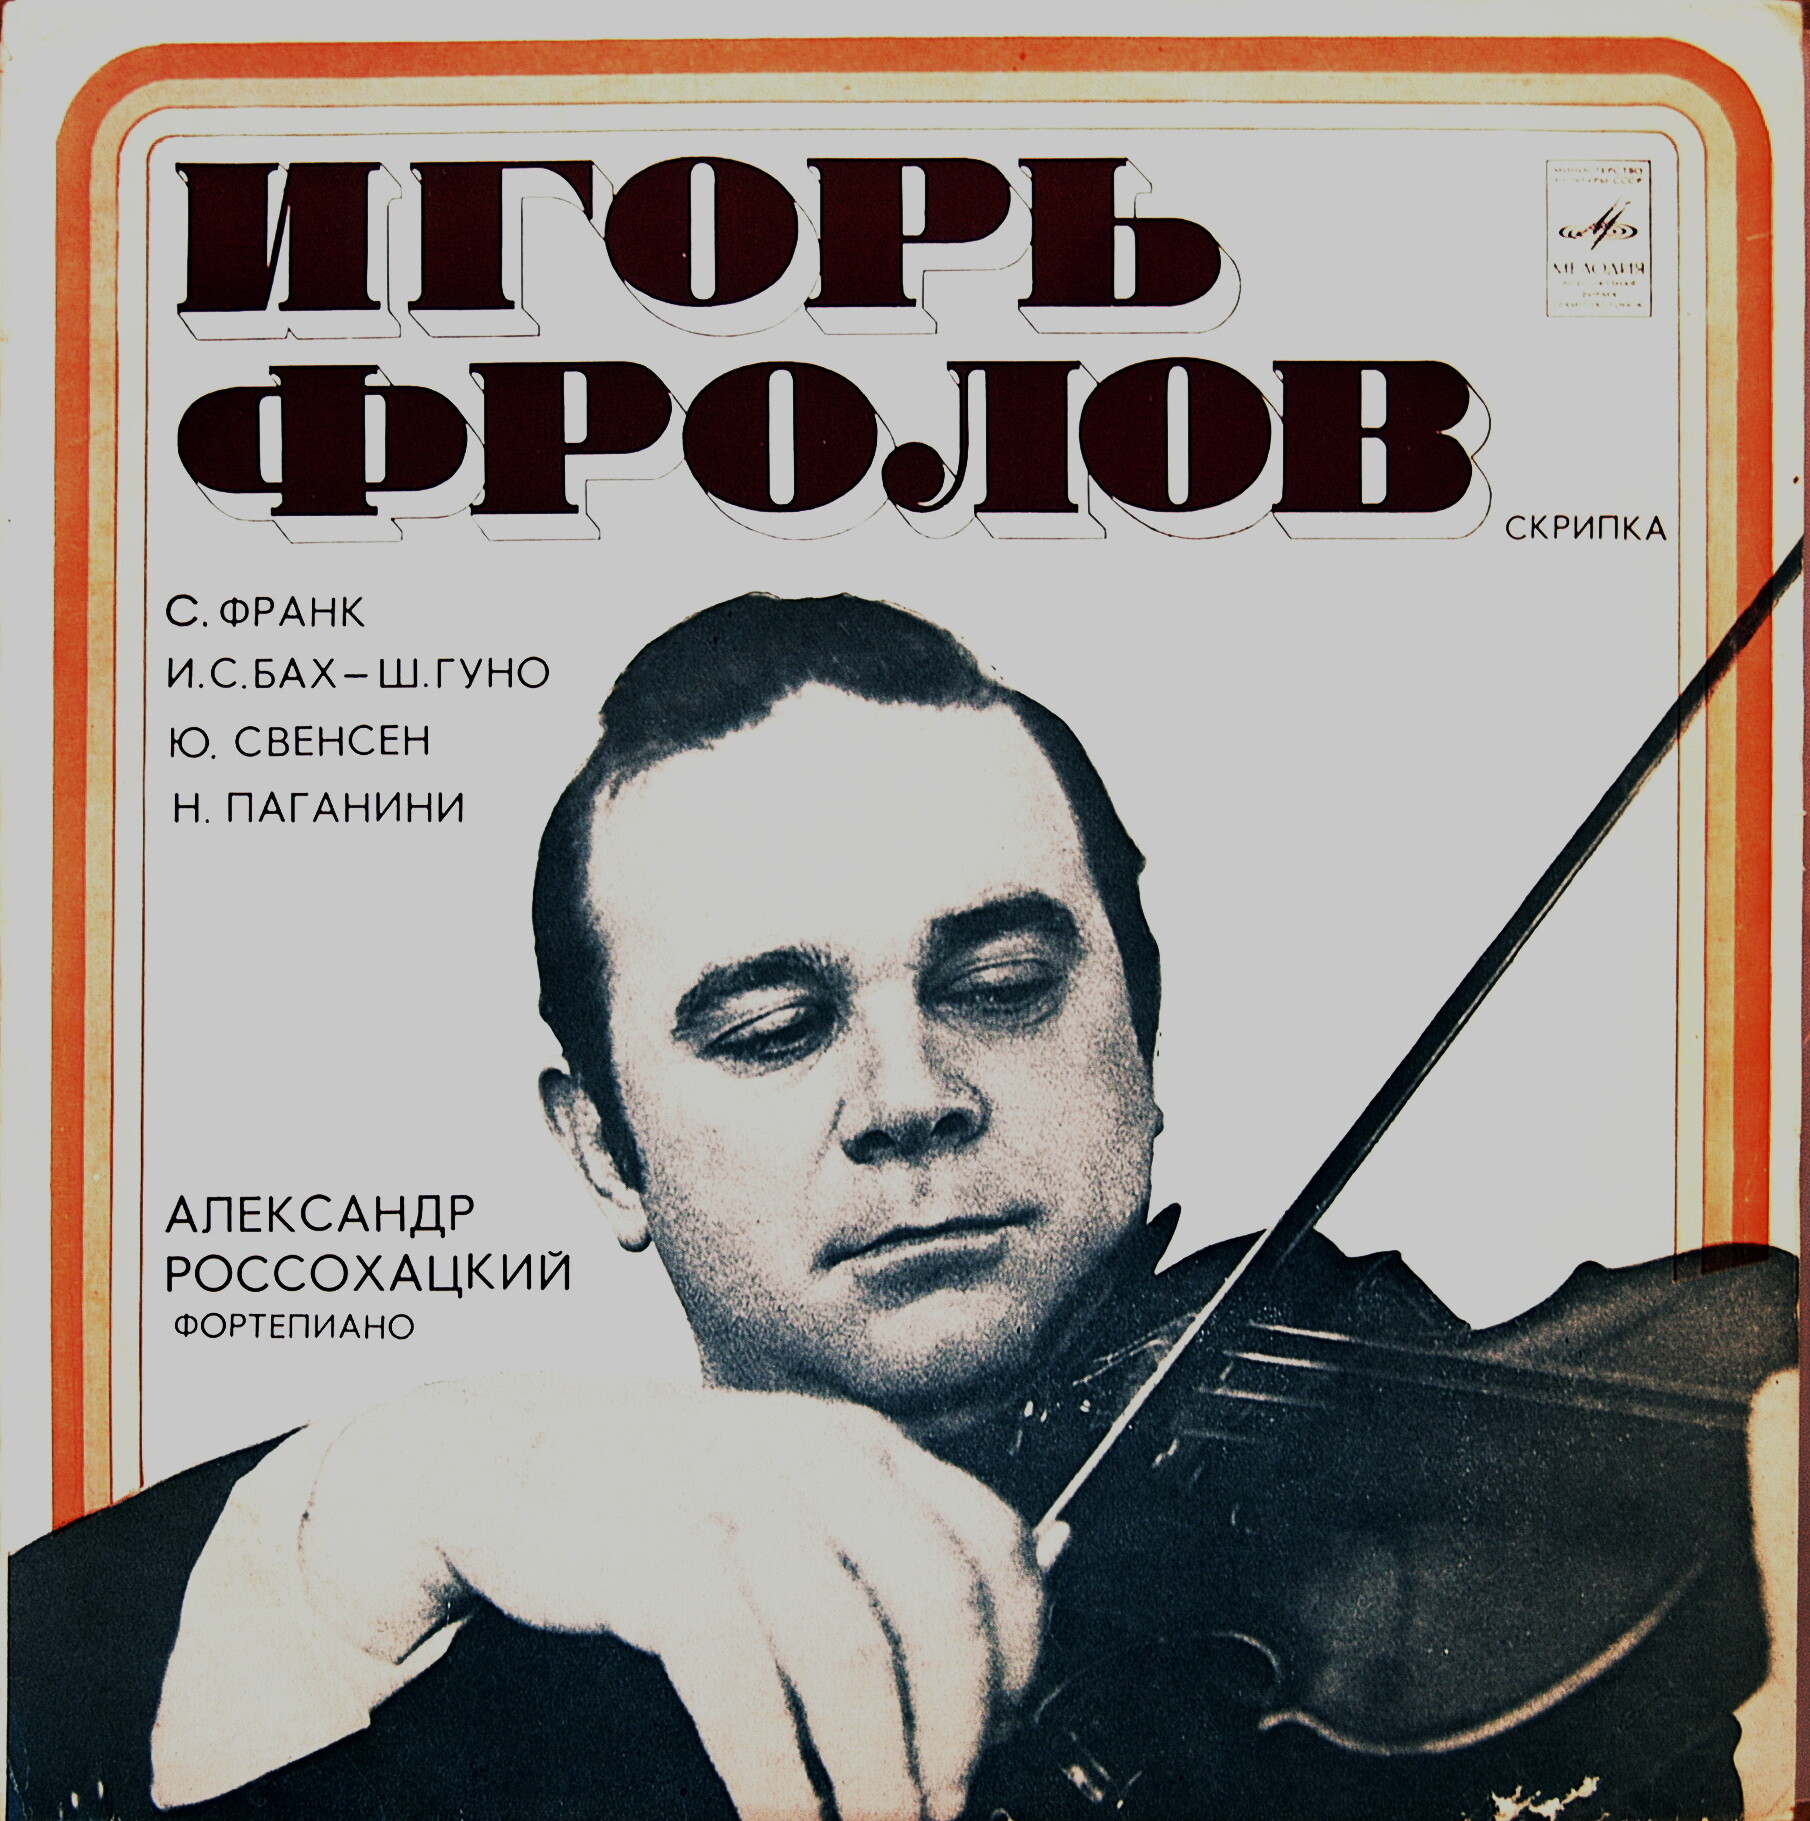 ФРОЛОВ Игорь (скрипка)